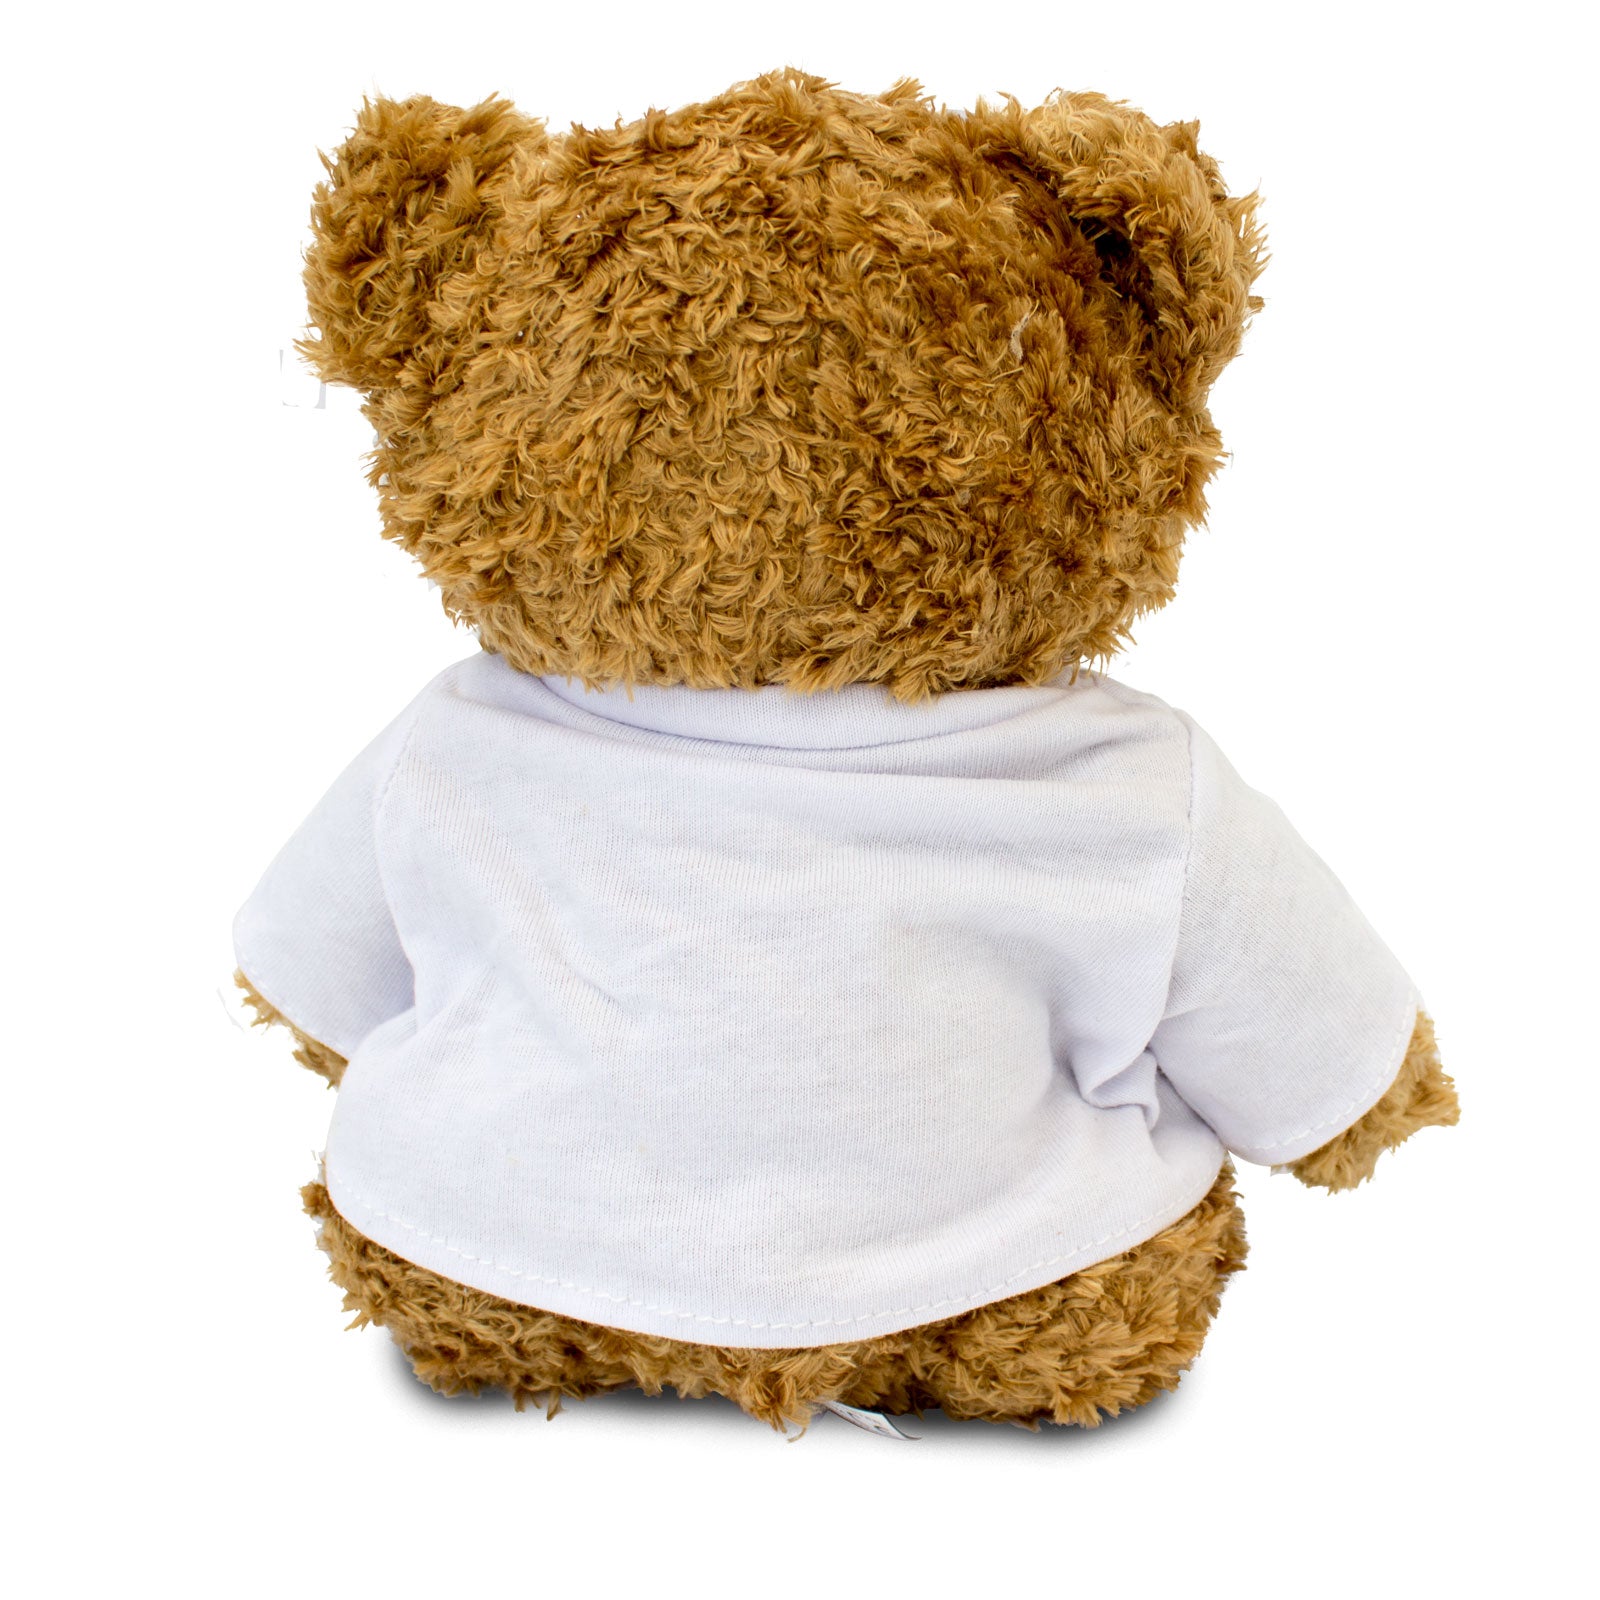 Get Well Soon Aidan - Teddy Bear